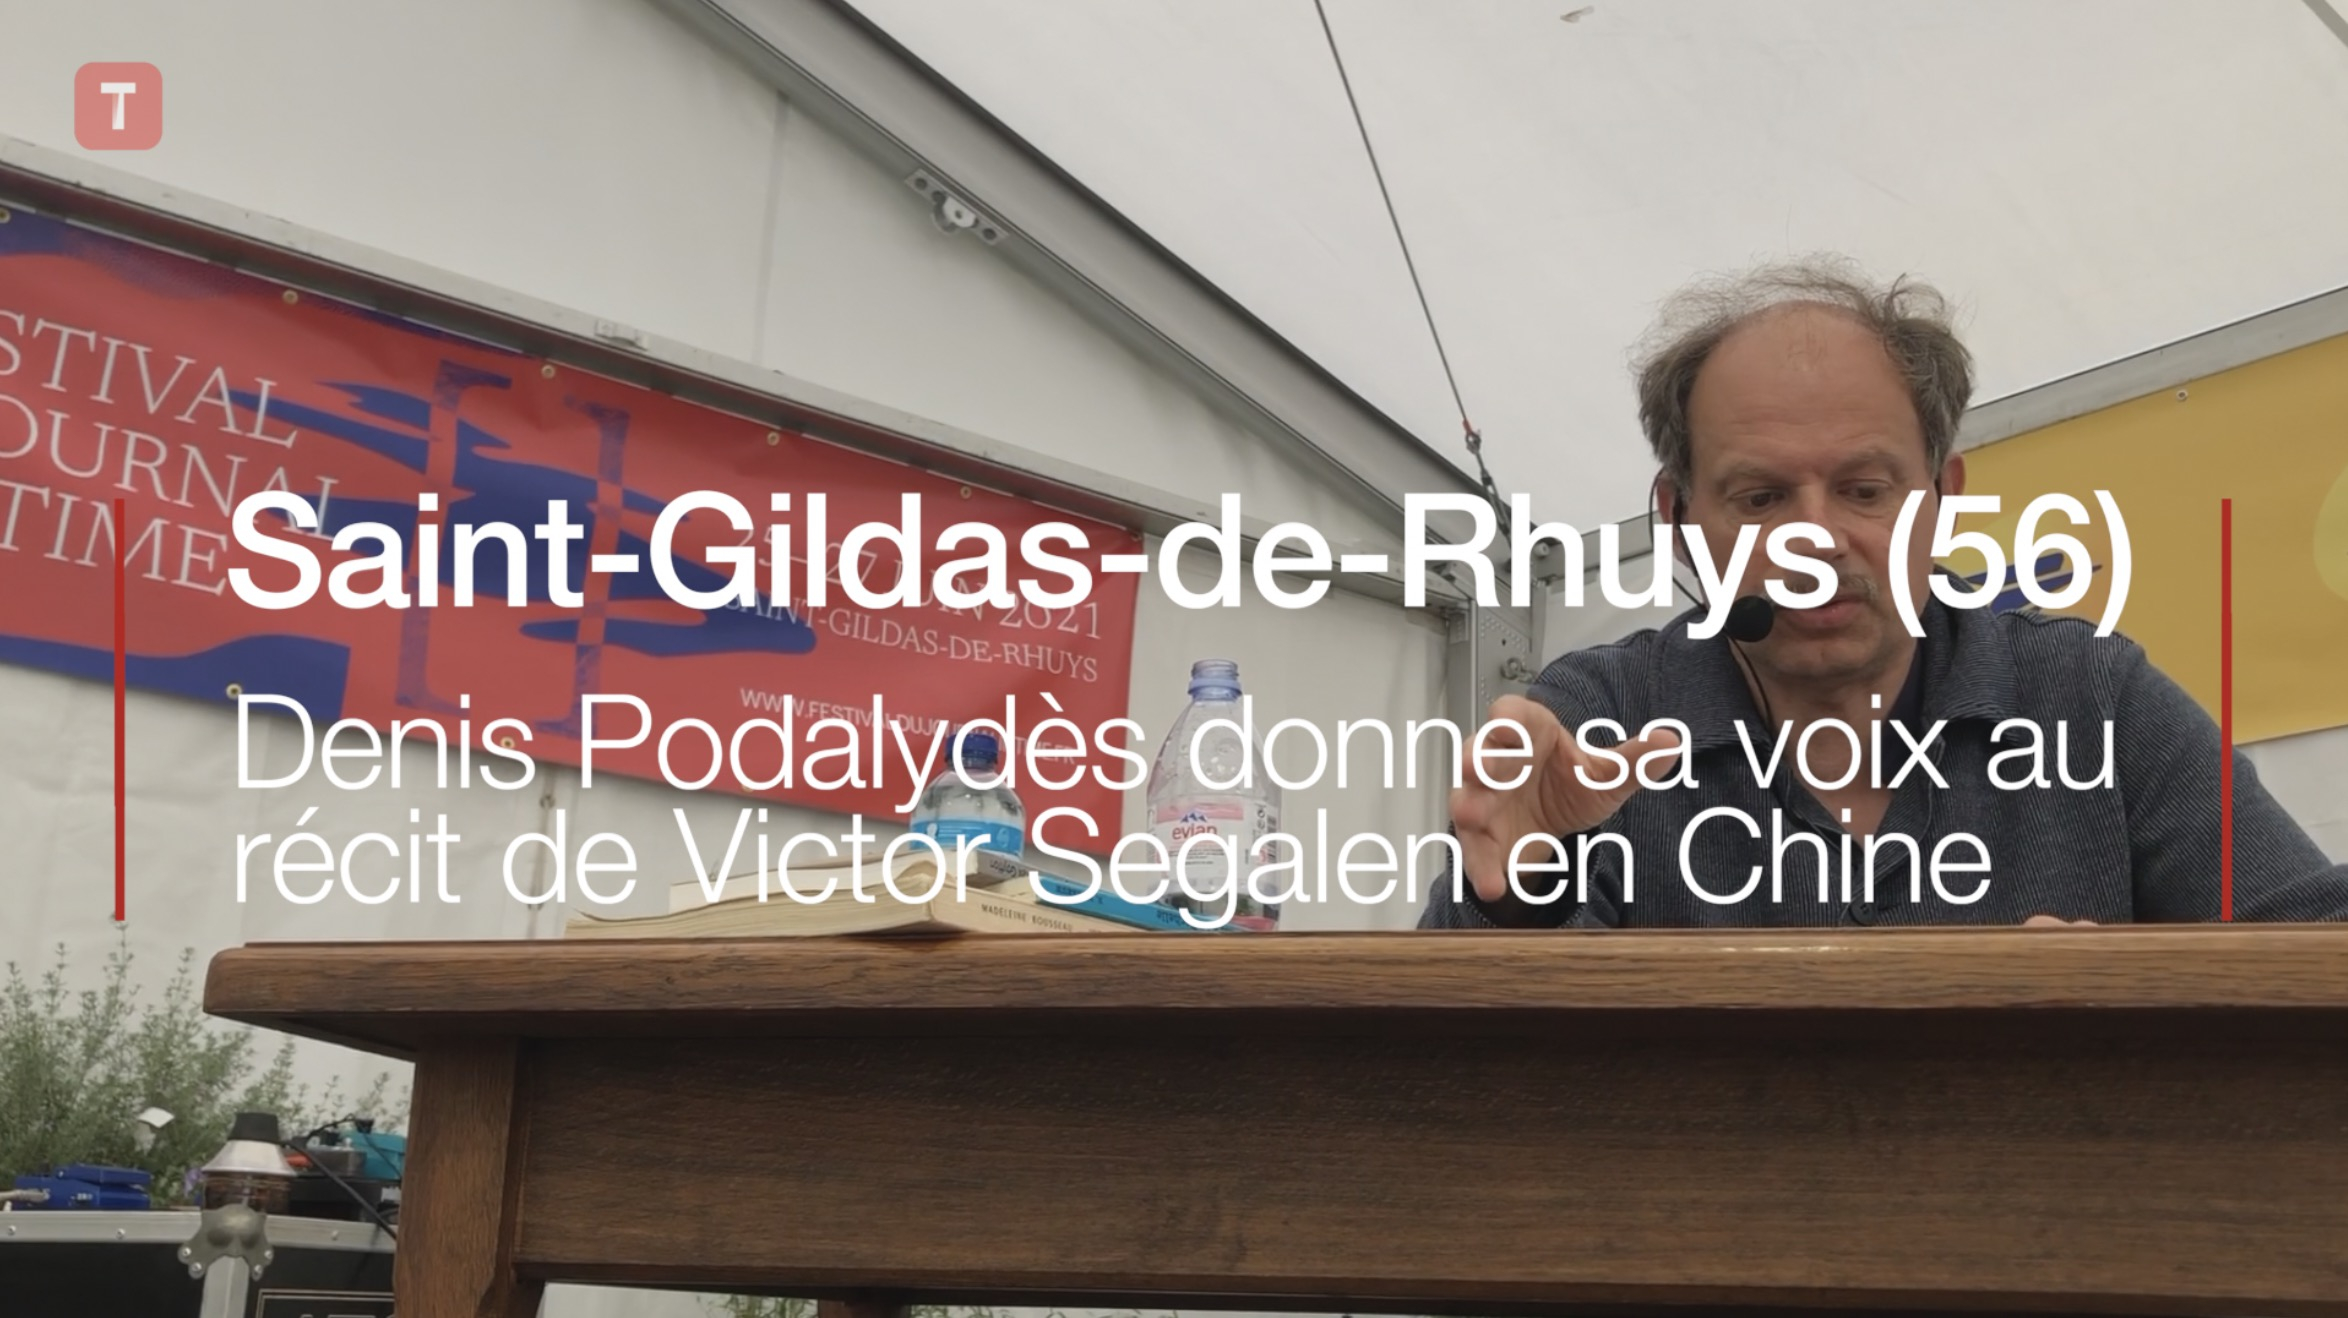 Saint-Gildas-de-Rhuys (56). Denis Podalydès donne sa voix au récit de Victor Segalen en Chine (Le Télégramme)